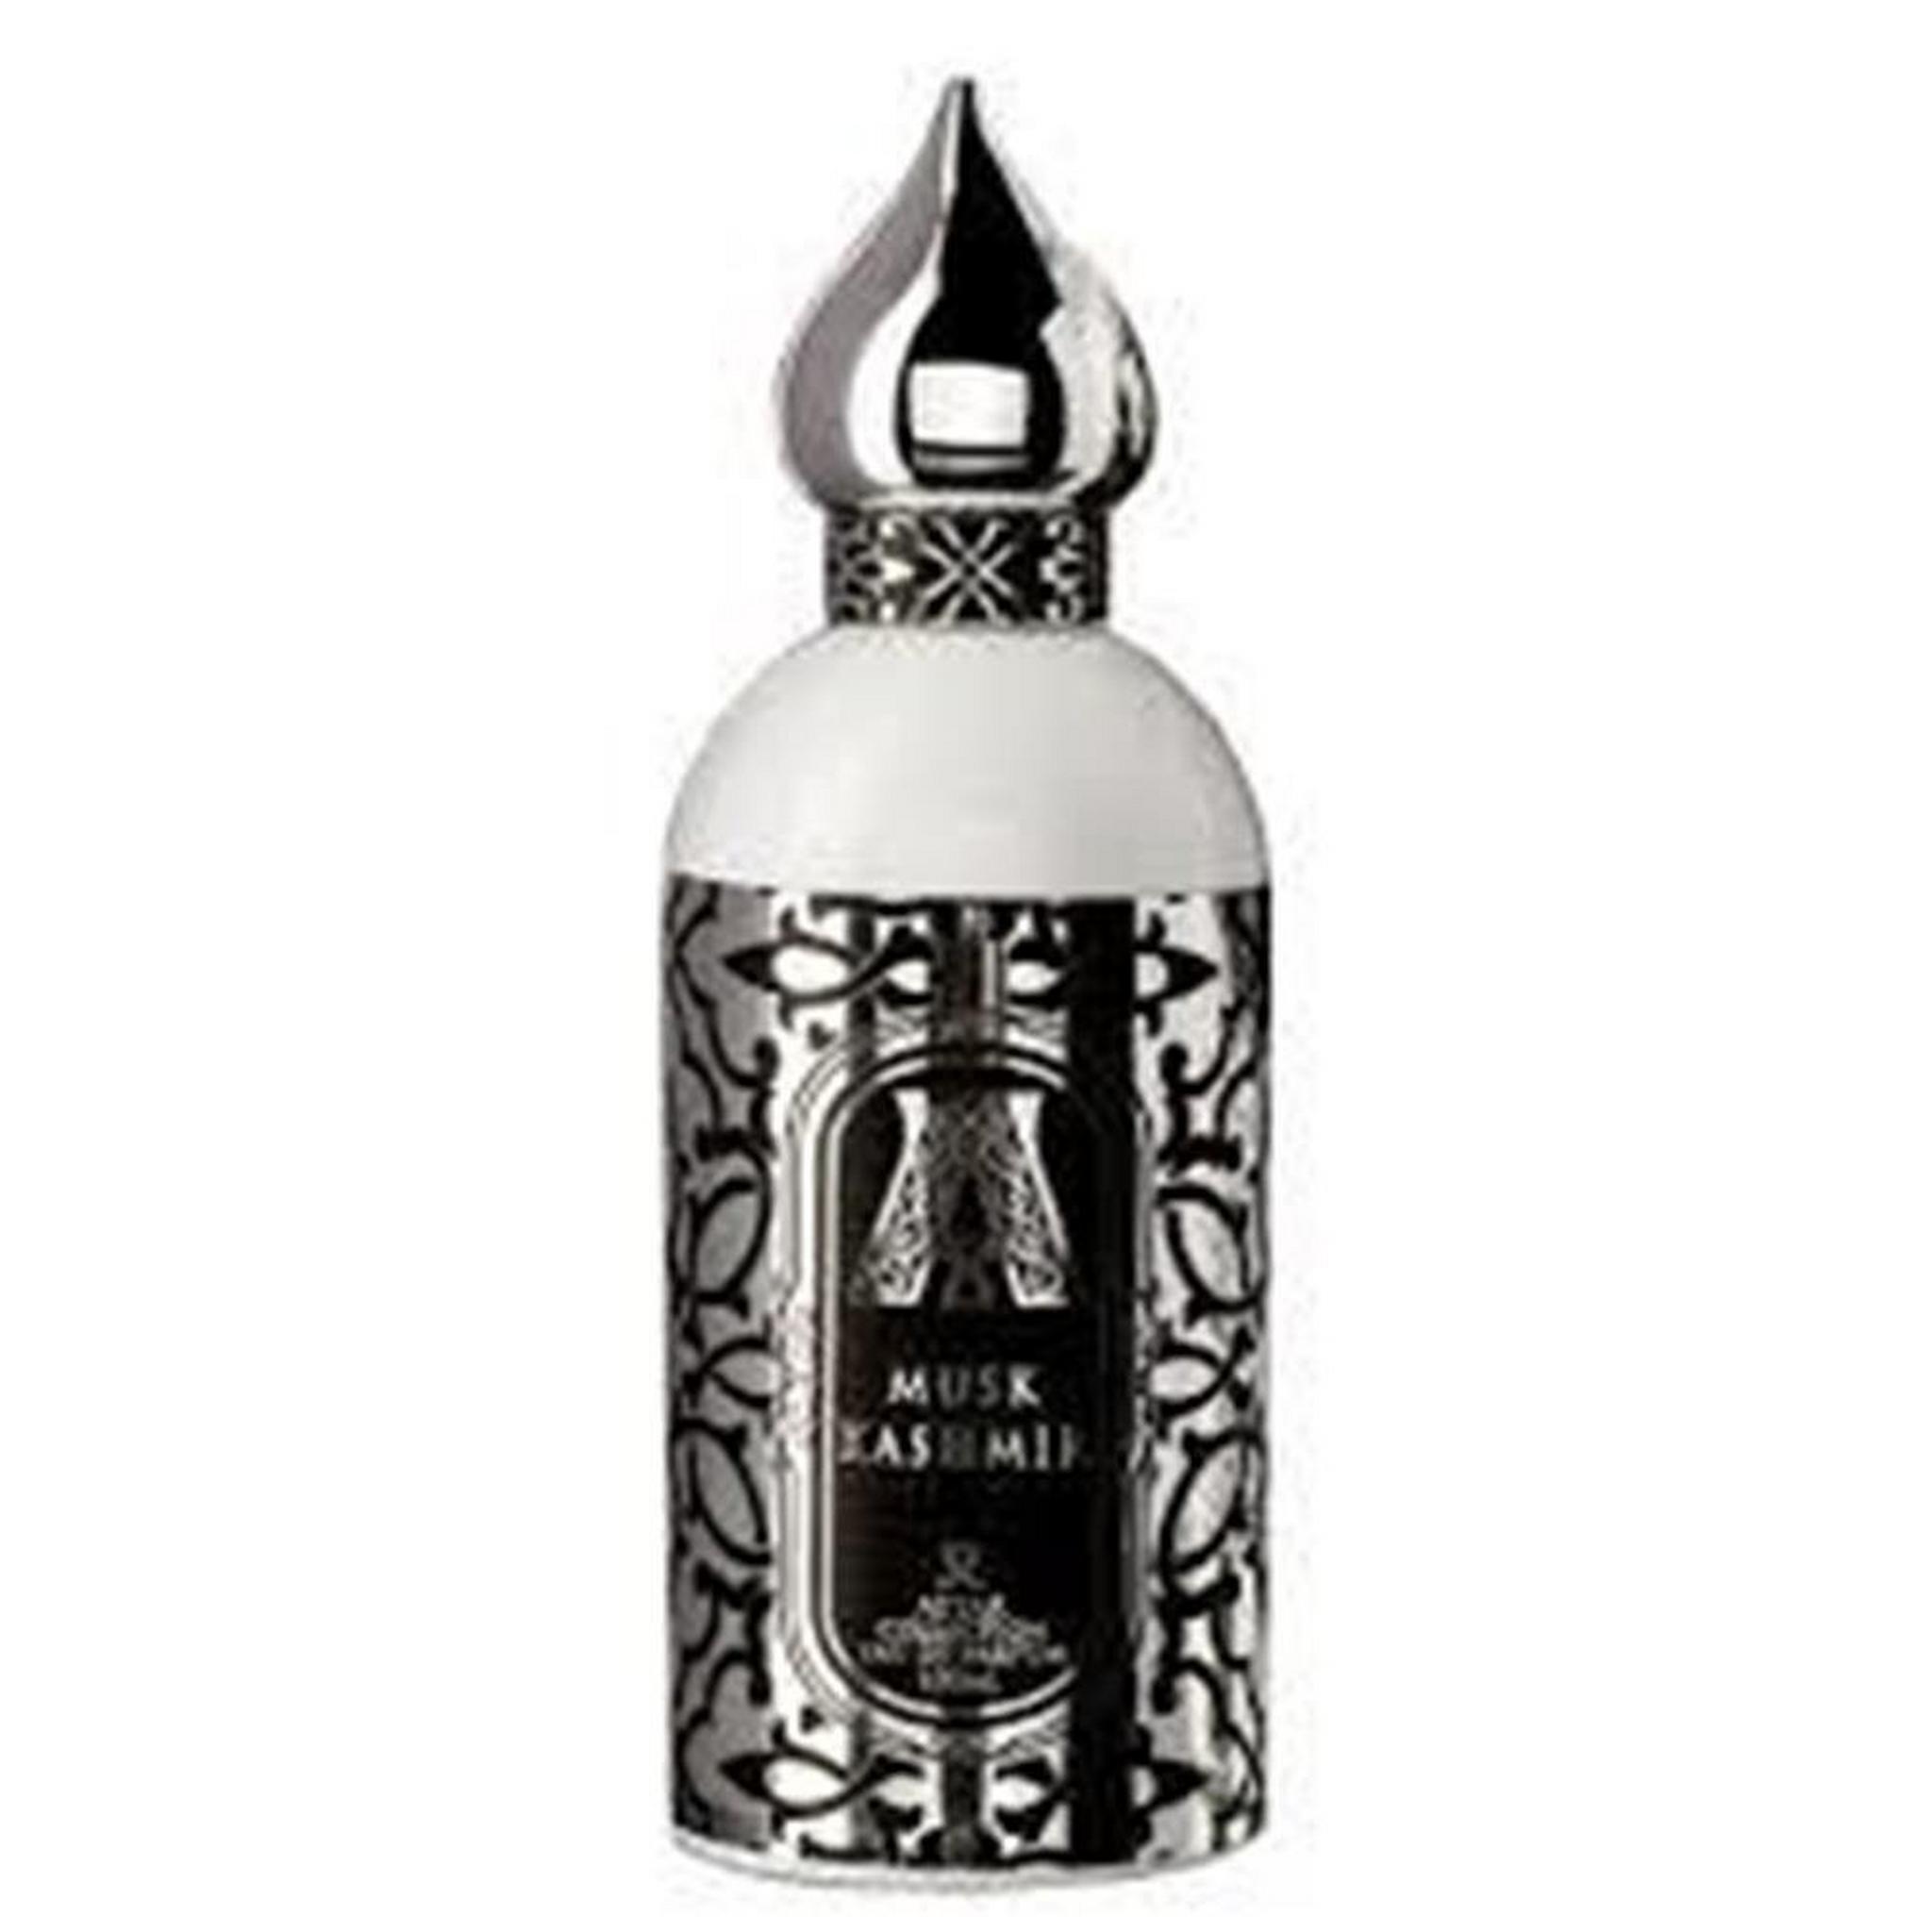 ATTAR COLLECTION Musk Kashmir - Eau De Parfum 100 ml